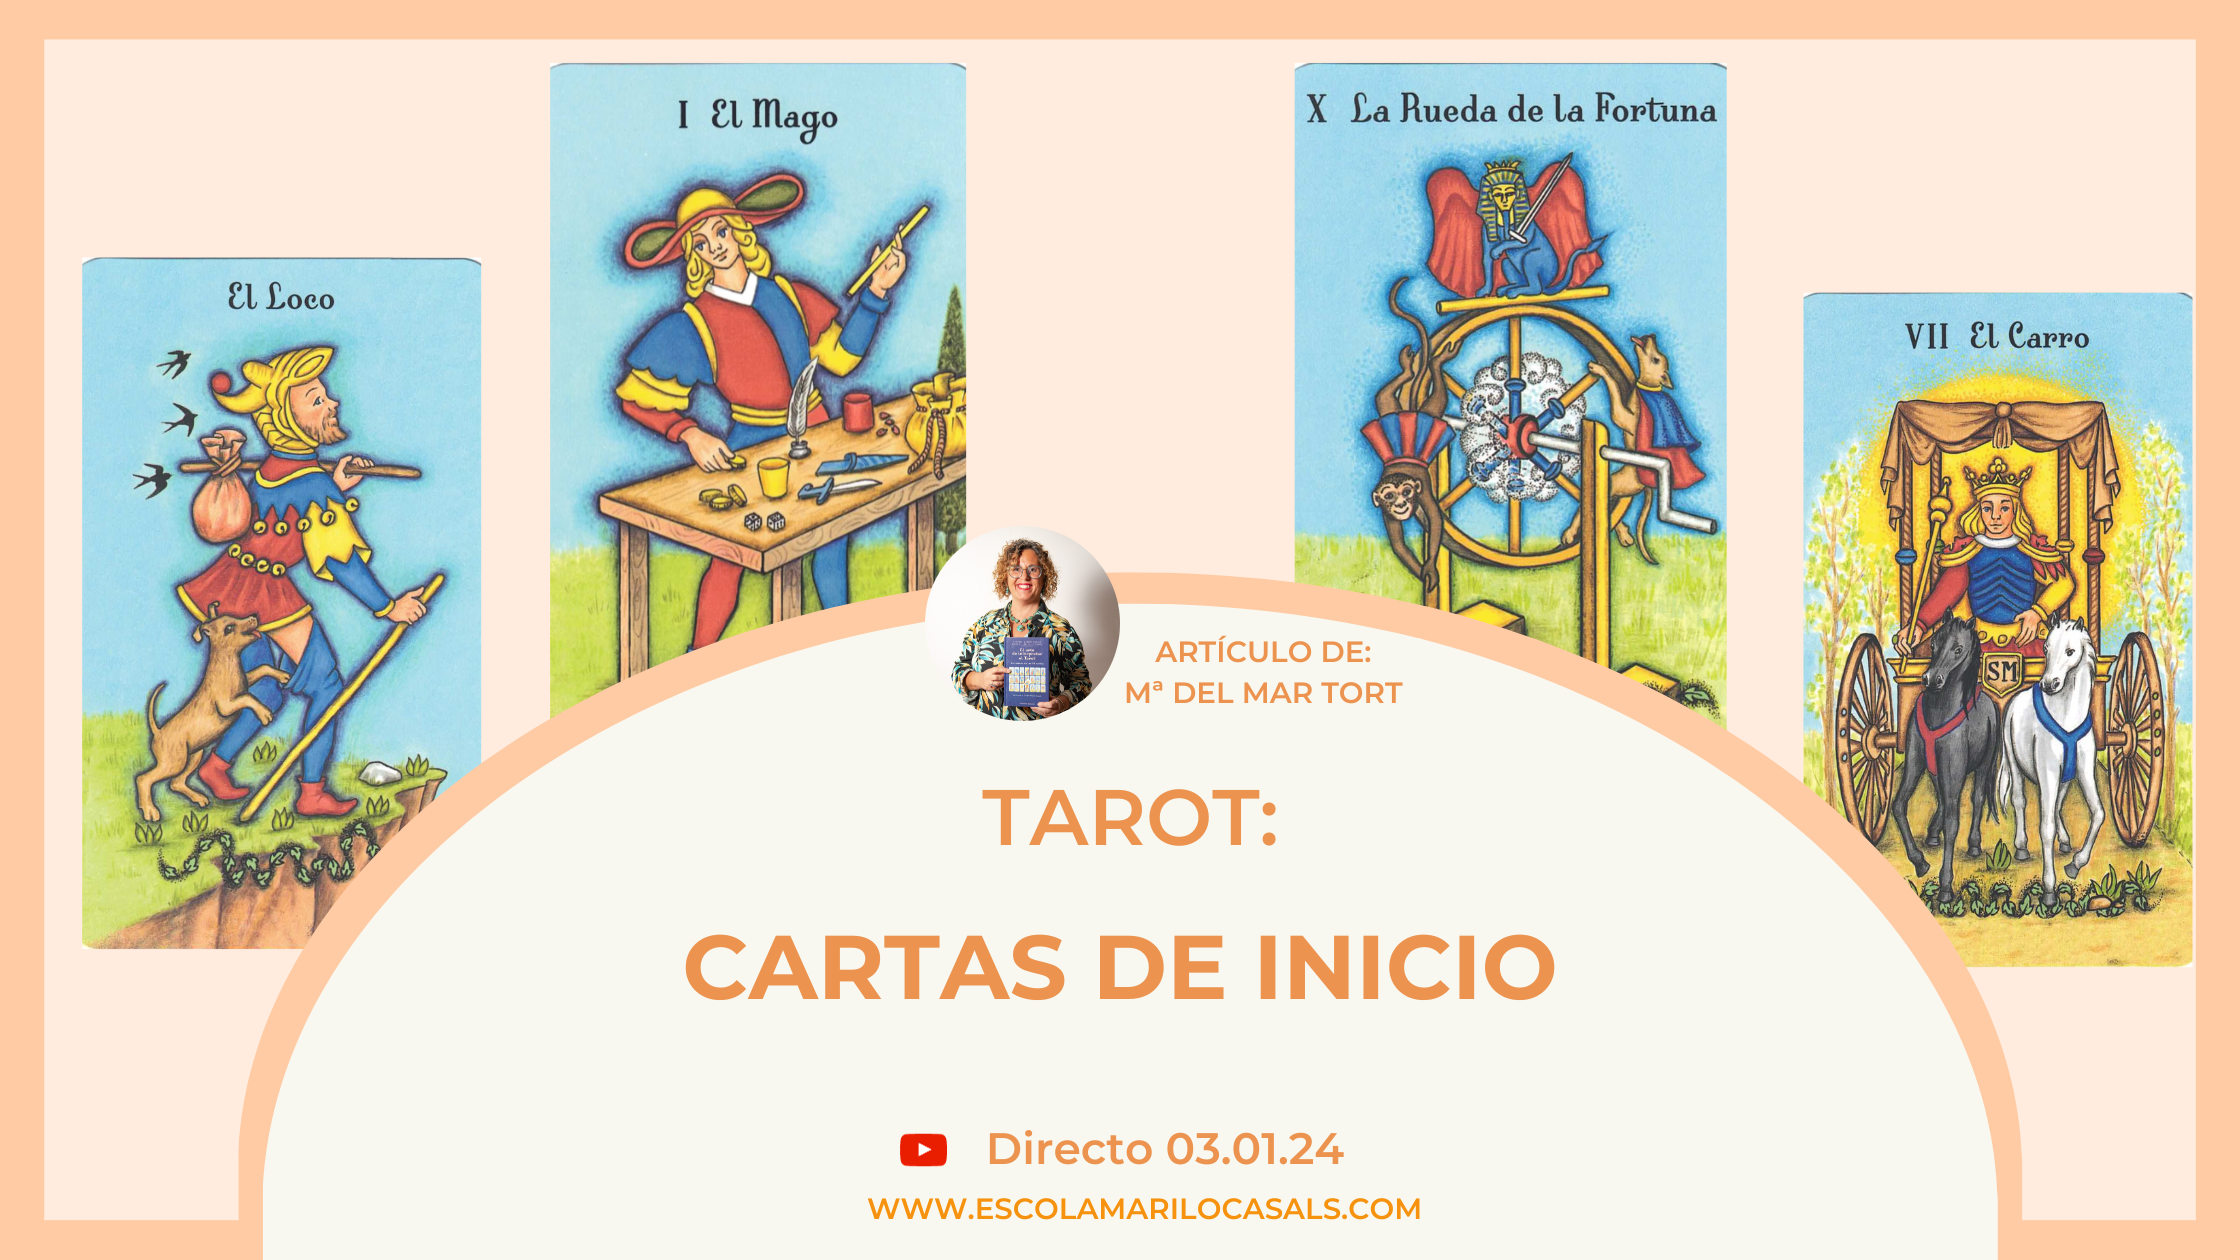 Artículo de blog acerca de las cartas de inicio en el Tarot